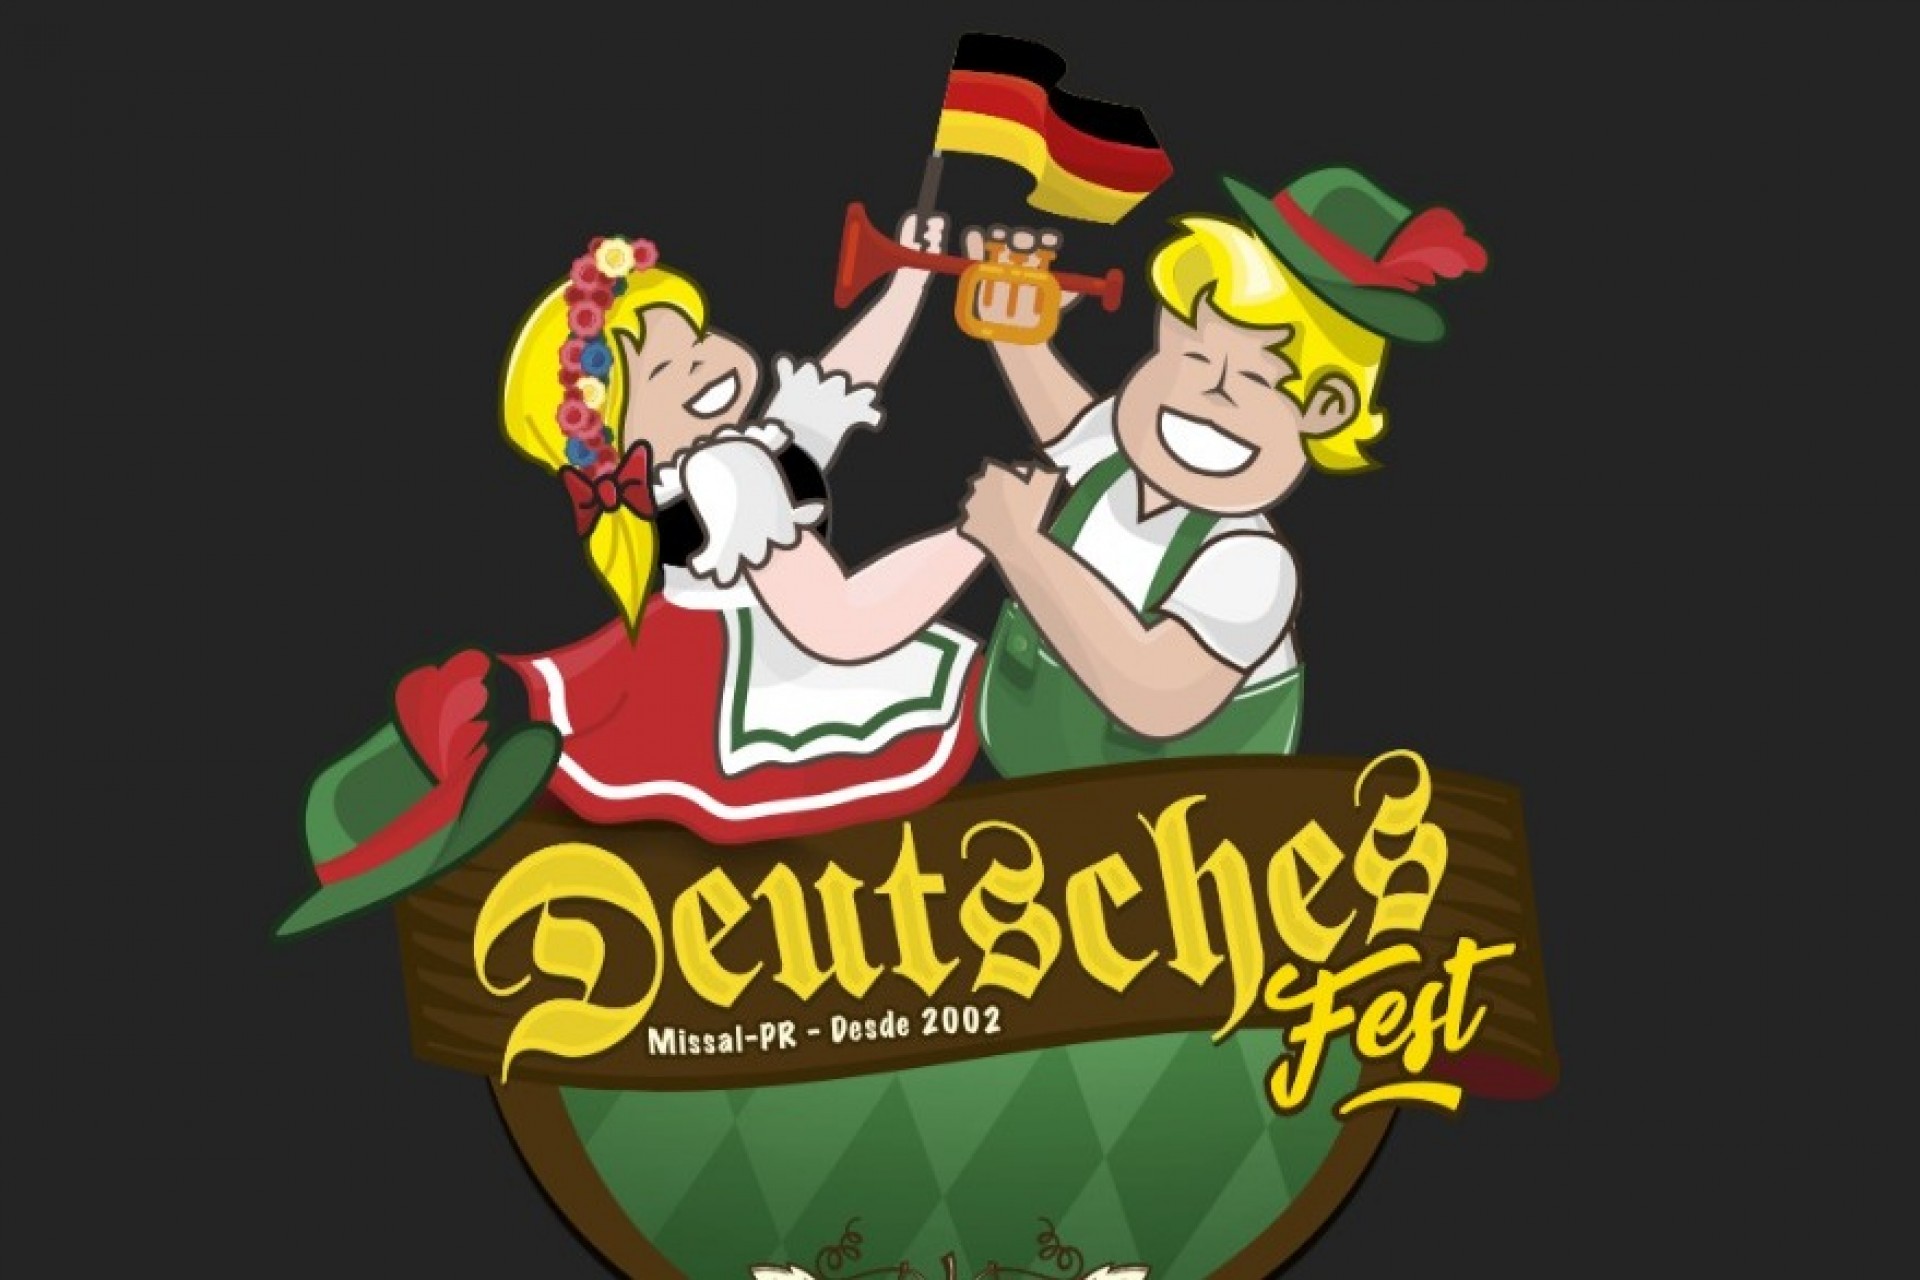 Orientações para Menores de Idade na 18ª Deutsches Fest